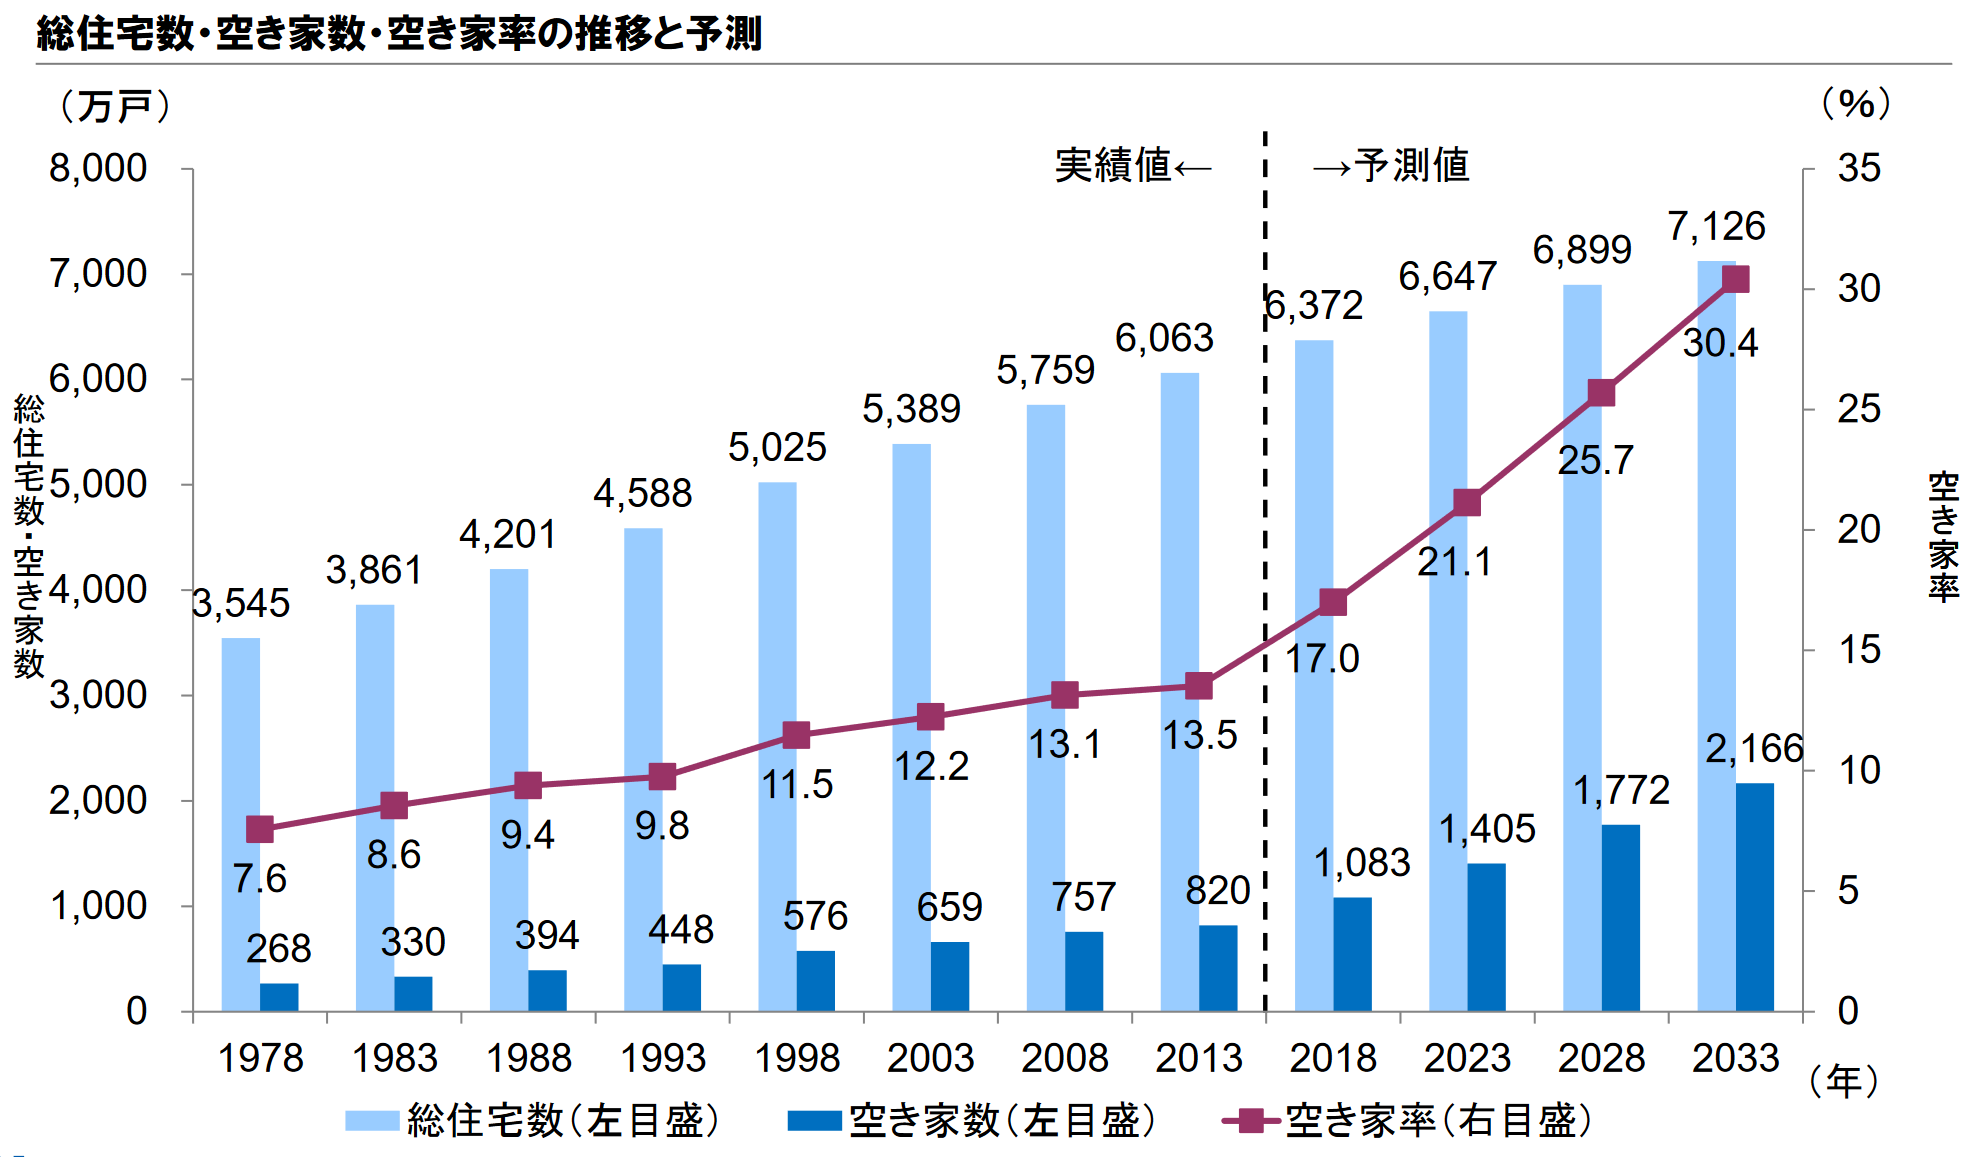 野村総合研究所による2023年以降の空き家率の予測